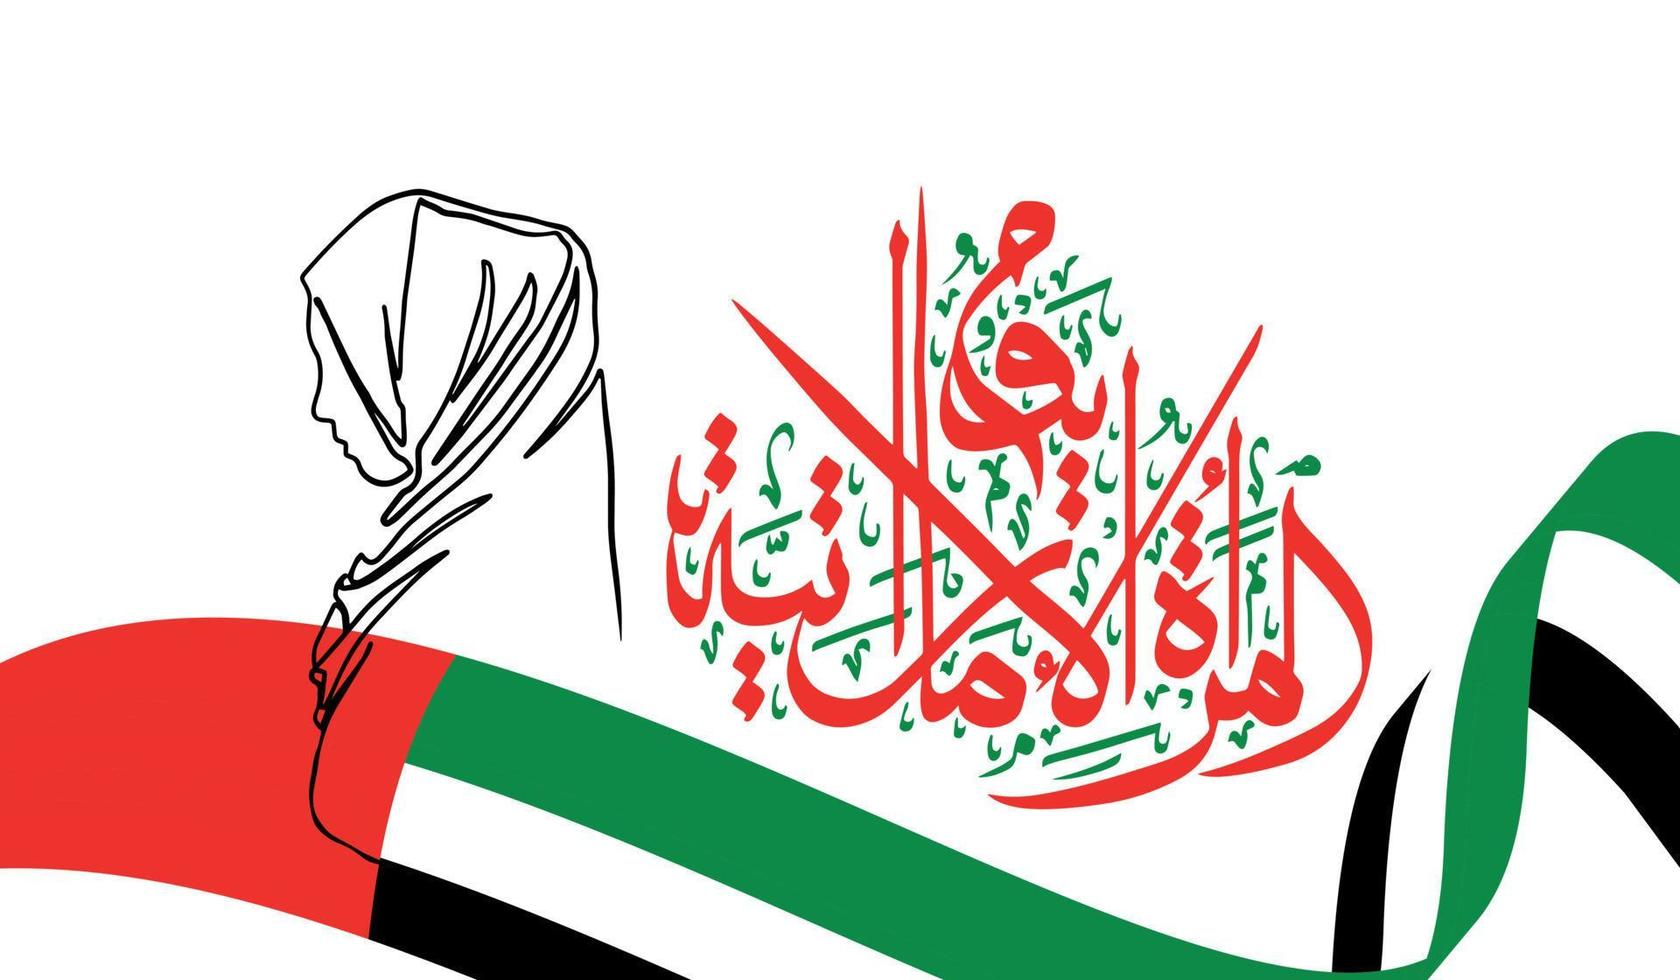 emirati vrouw dag vector illustratie met uae vlag kleuren palet. Arabisch woorden vertaald net zo emirati vrouwen dag